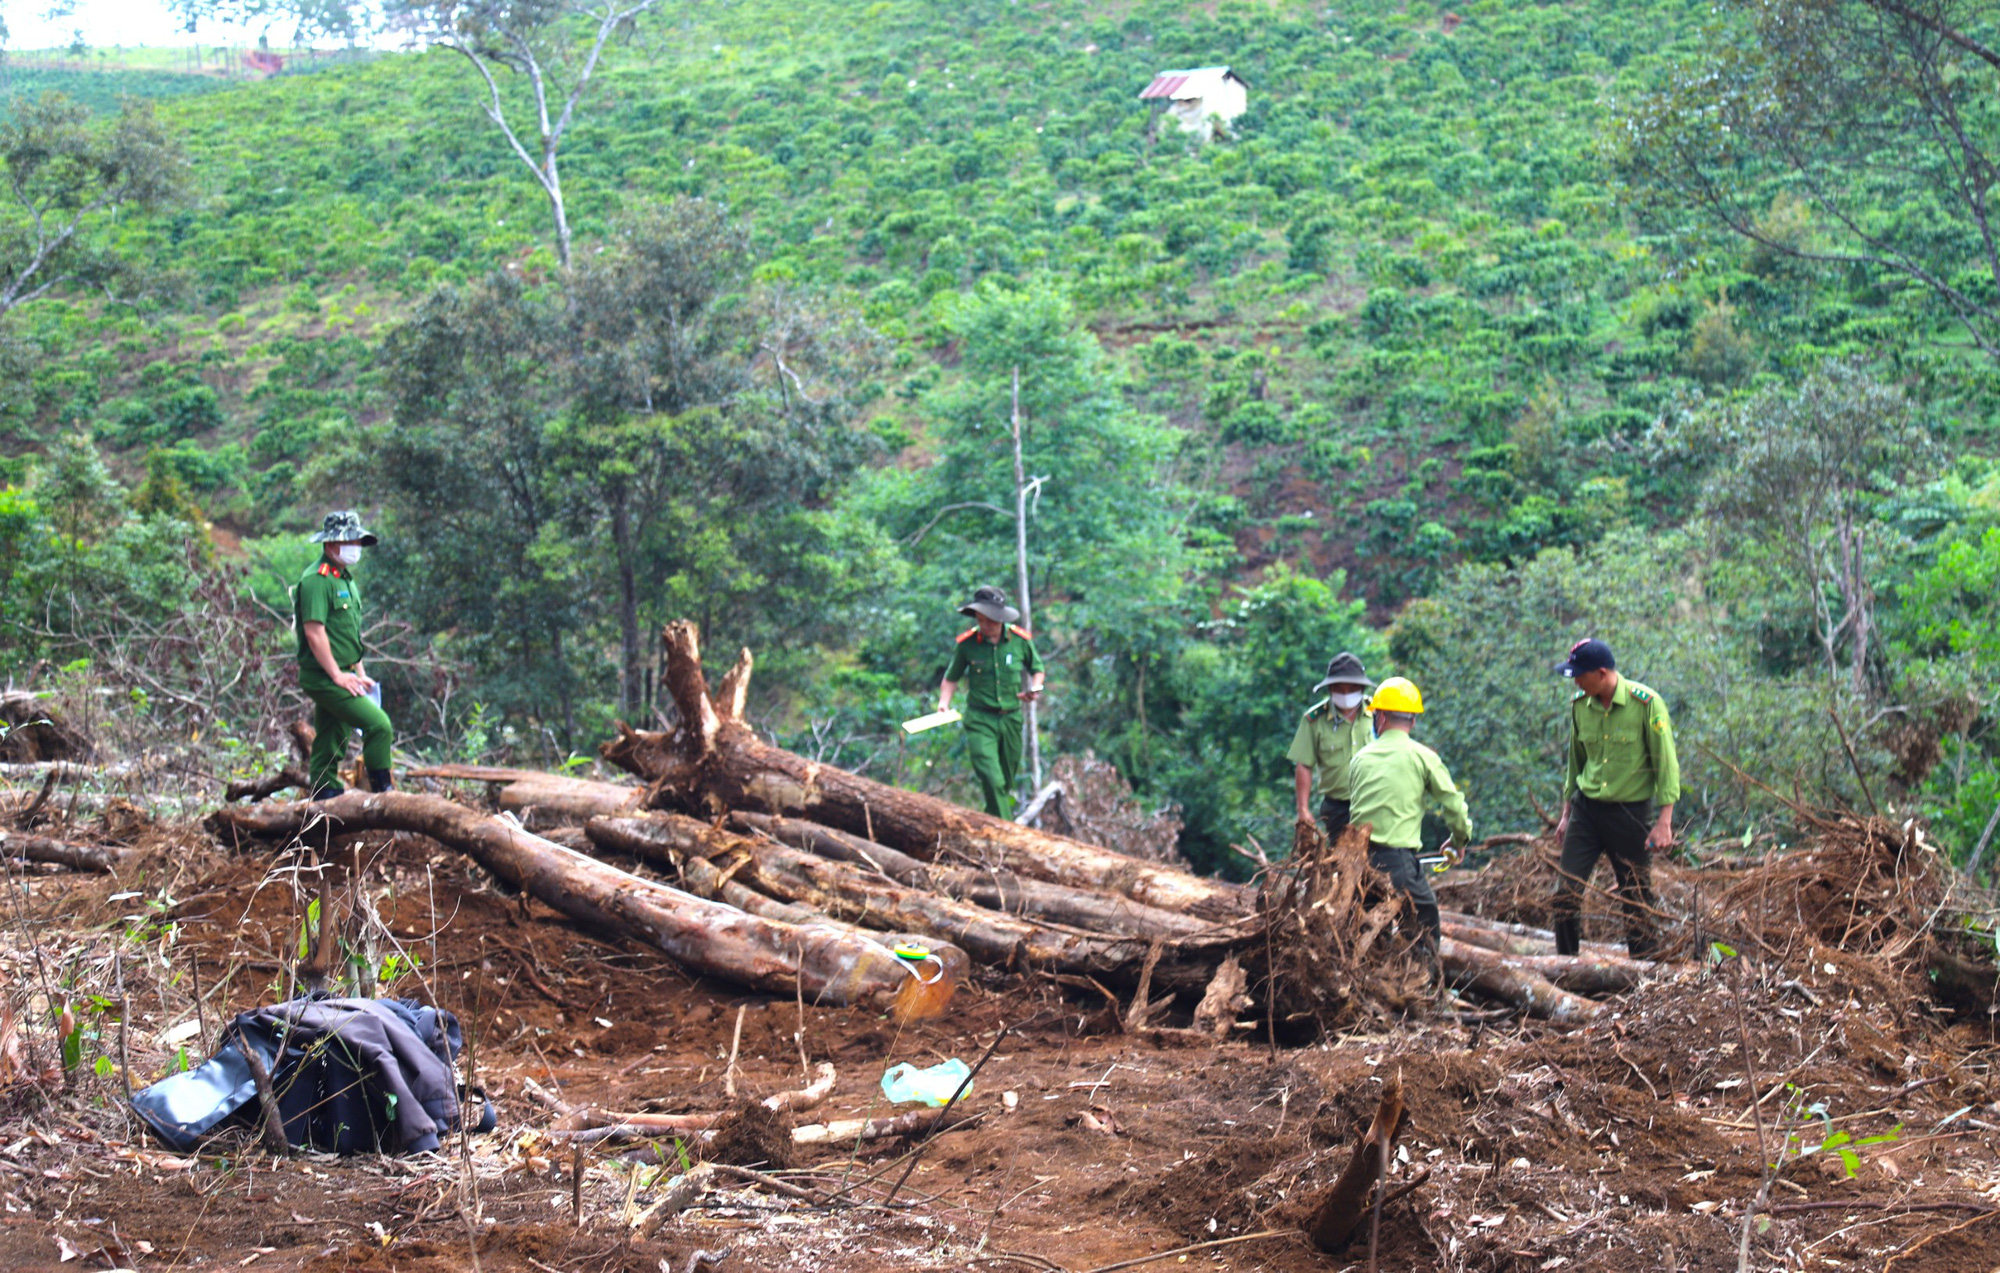 Vụ phá 1,9ha rừng ở Bảo Lâm: Tạm đình chỉ công tác Chủ tịch xã Lộc Phú 15 ngày - Ảnh 1.